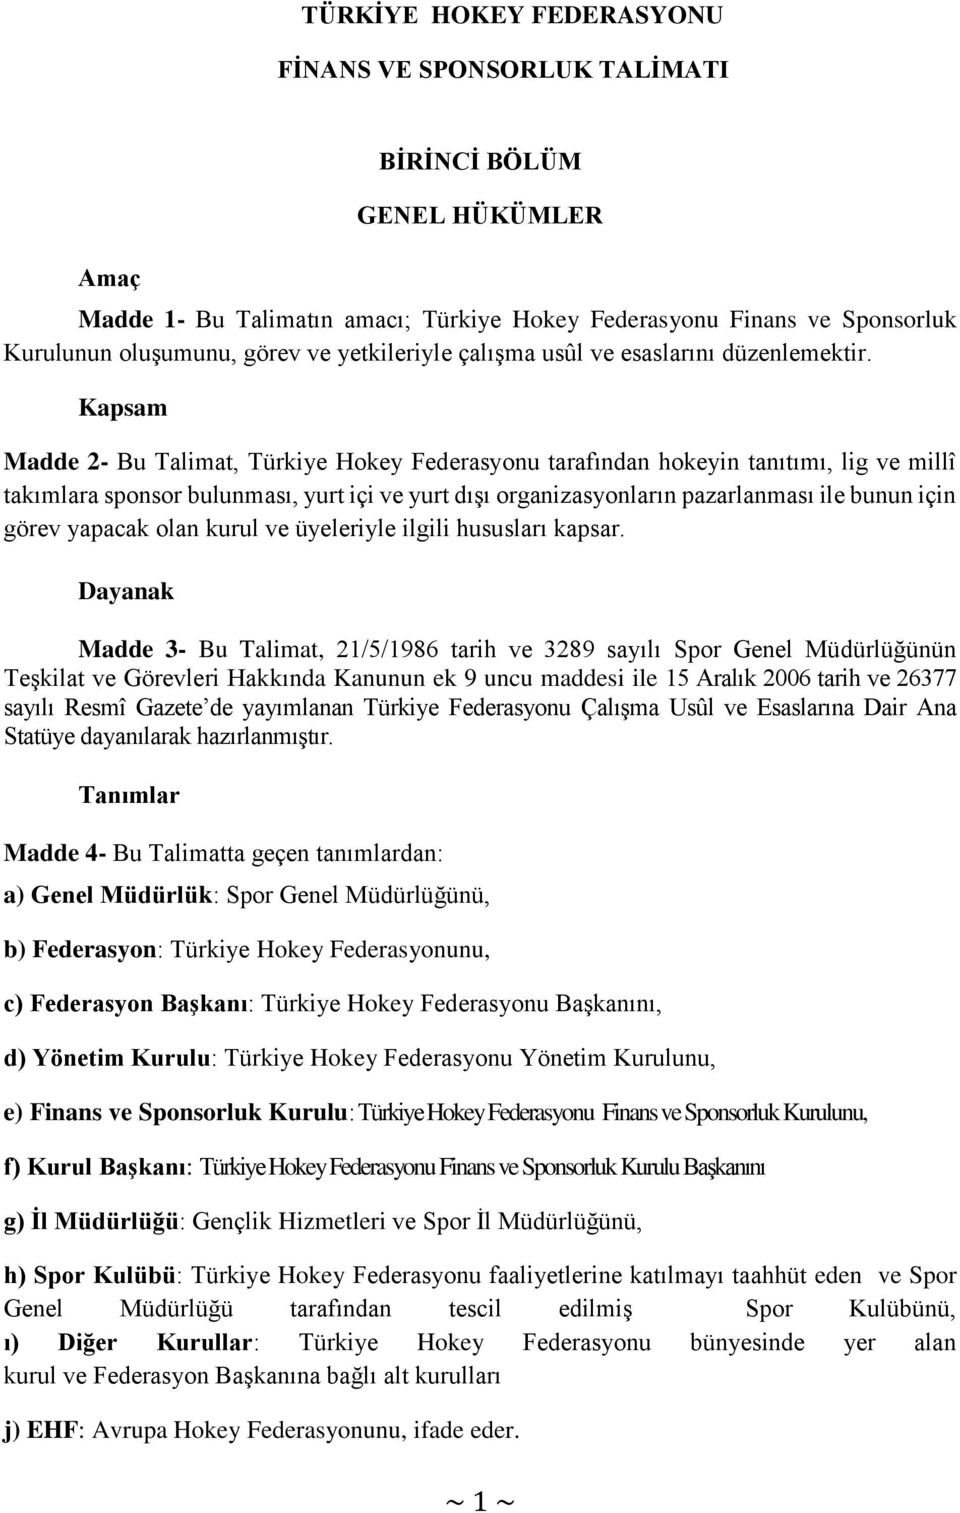 Kapsam Madde 2- Bu Talimat, Türkiye Hokey Federasyonu tarafından hokeyin tanıtımı, lig ve millî takımlara sponsor bulunması, yurt içi ve yurt dışı organizasyonların pazarlanması ile bunun için görev